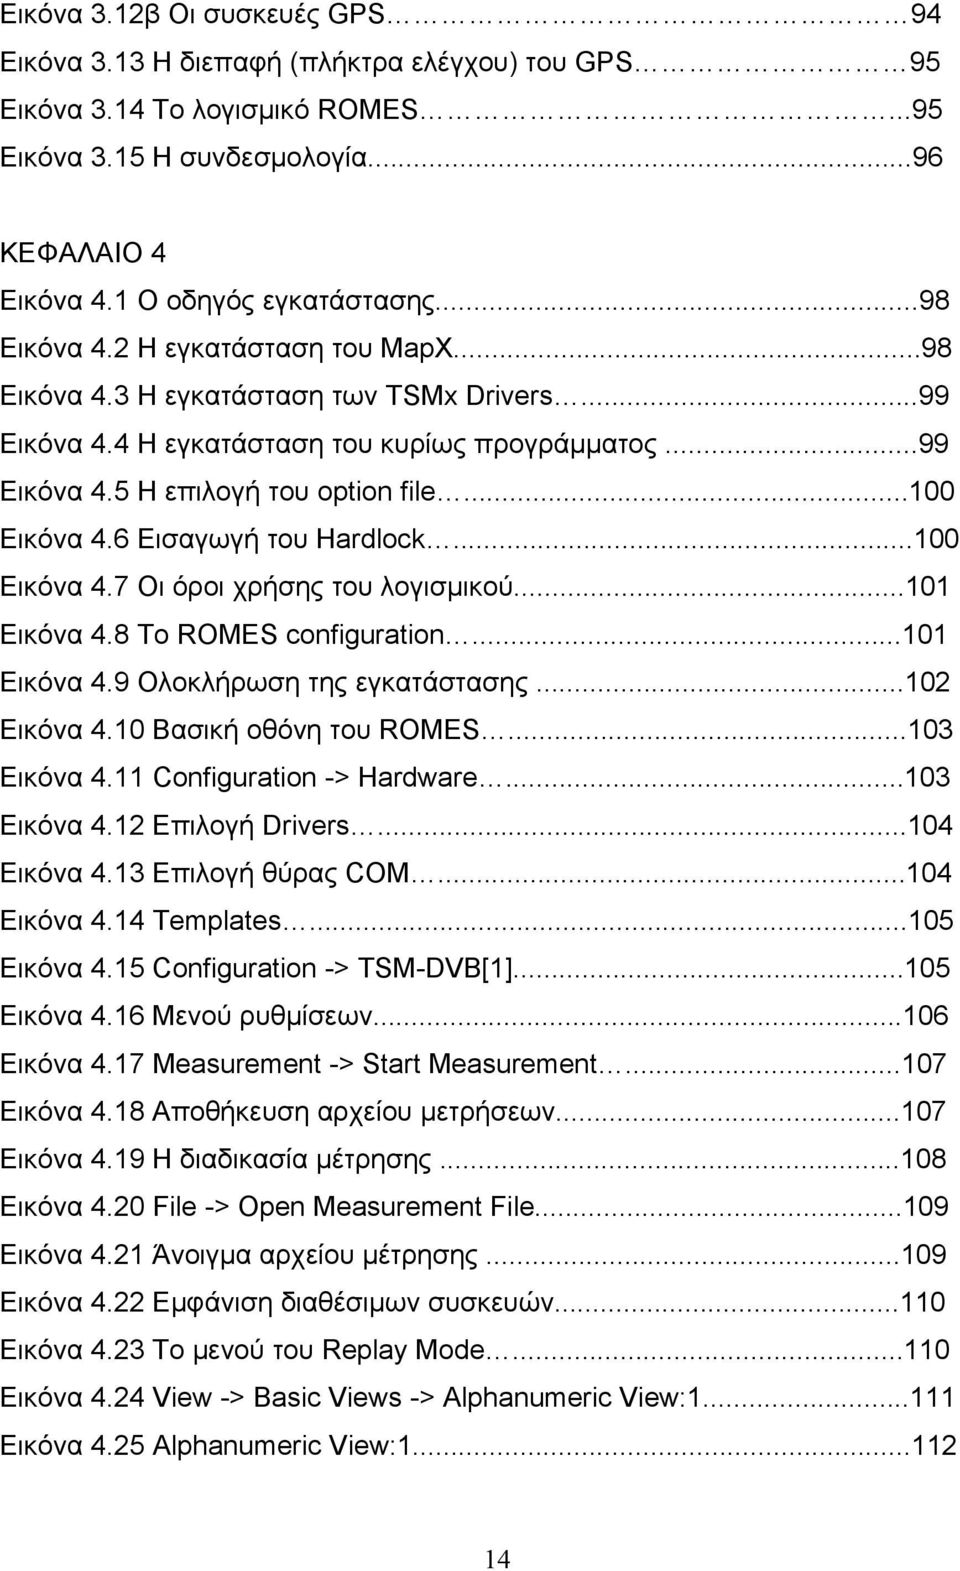 6 Εισαγωγή του Hardlock...100 Εικόνα 4.7 Οι όροι χρήσης του λογισμικού...101 Εικόνα 4.8 Το ROMES configuration...101 Εικόνα 4.9 Ολοκλήρωση της εγκατάστασης...102 Εικόνα 4.10 Βασική οθόνη του ROMES.